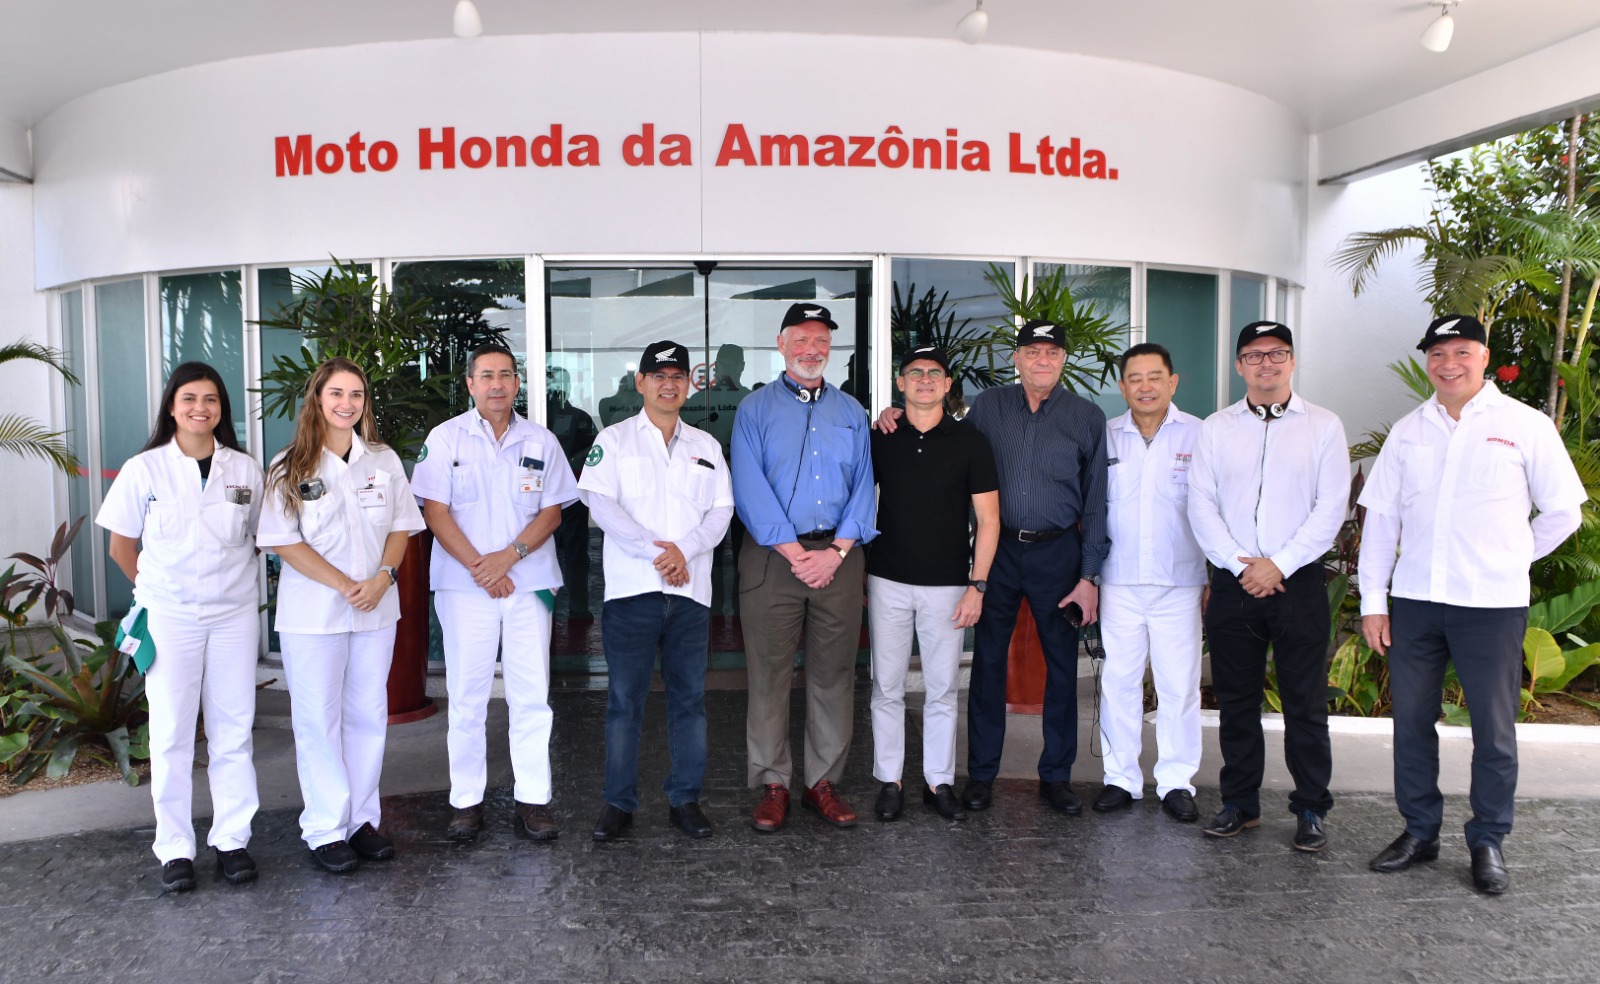 Prefeito de Manaus visita Moto Honda e destaca importância de iniciativas ambientais em Manaus